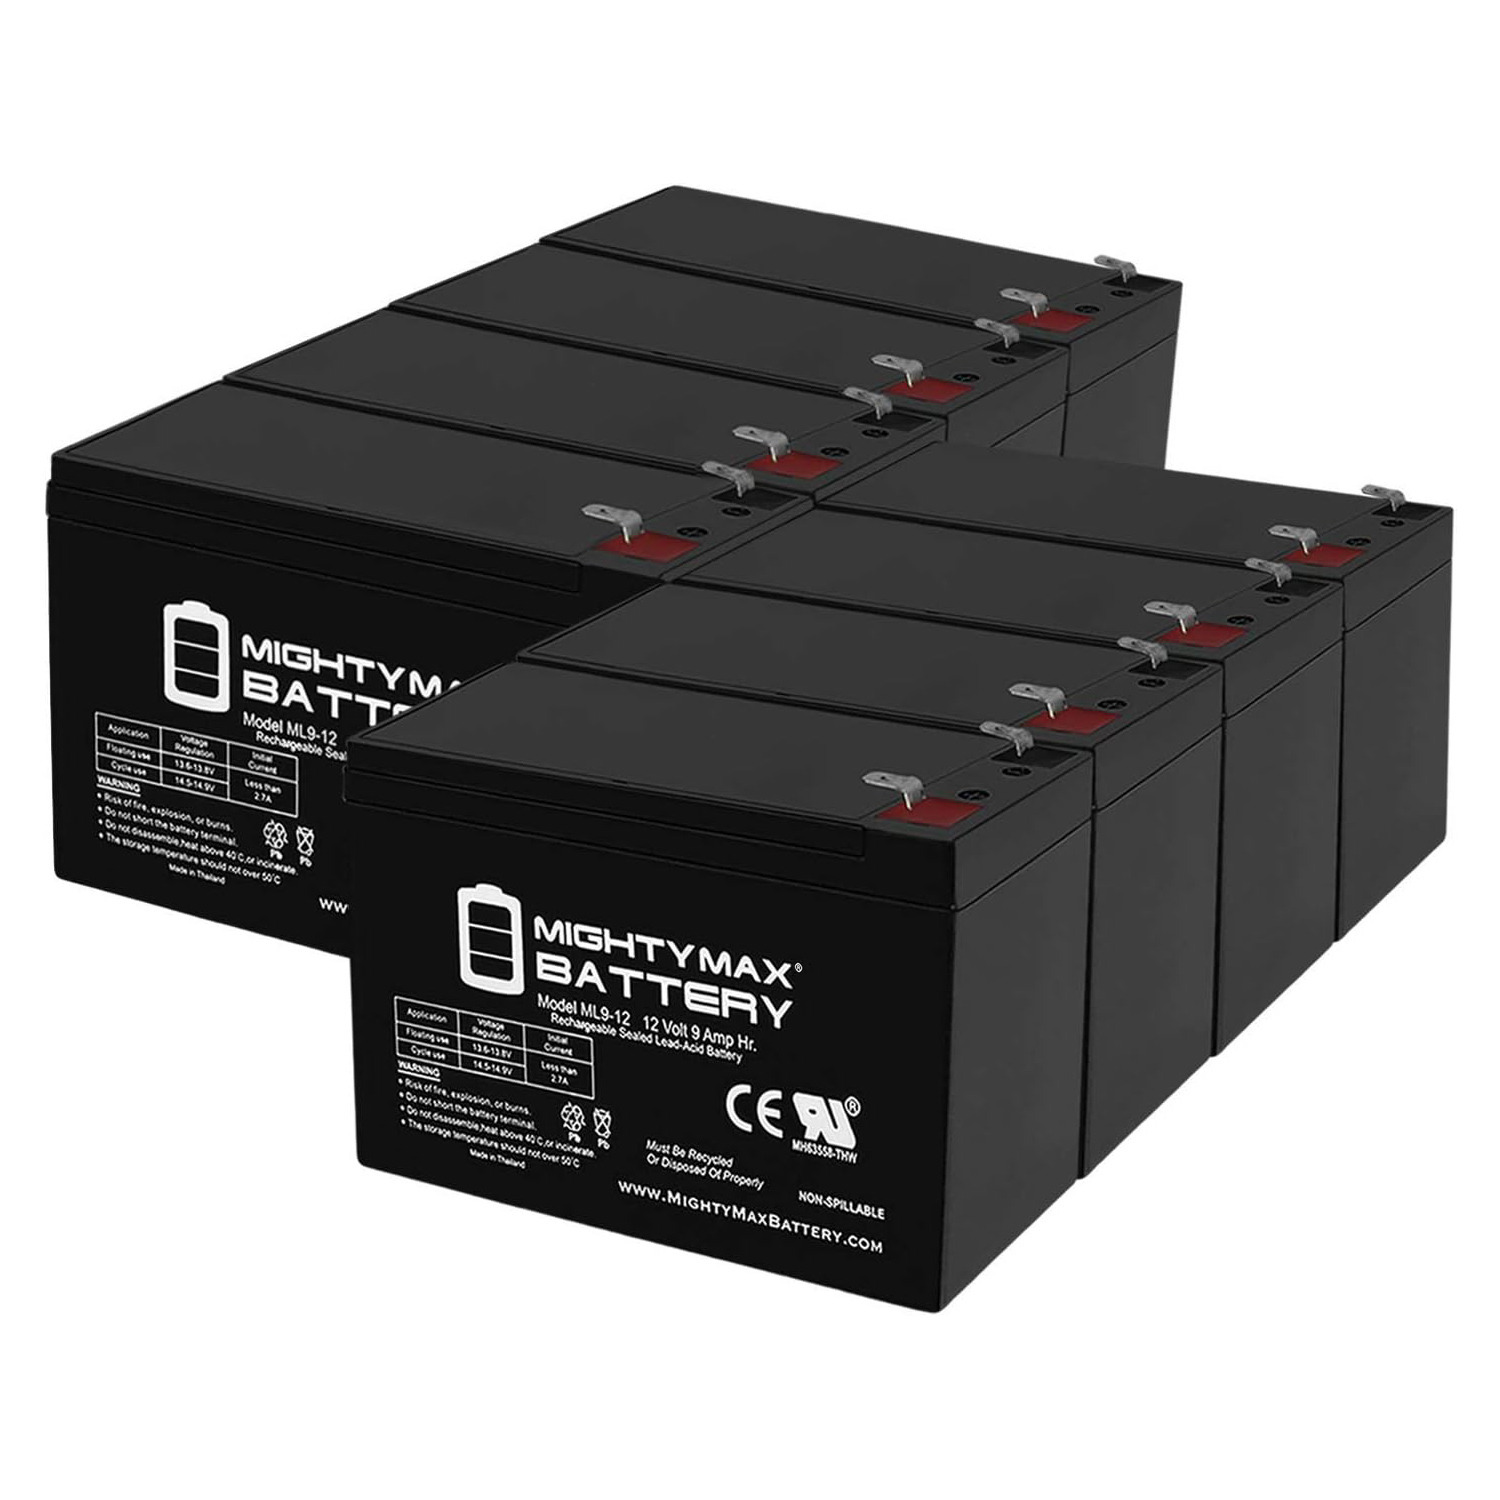 Altronix AL62412CX 12V, 9Ah Lead Acid Battery - 8 Pack